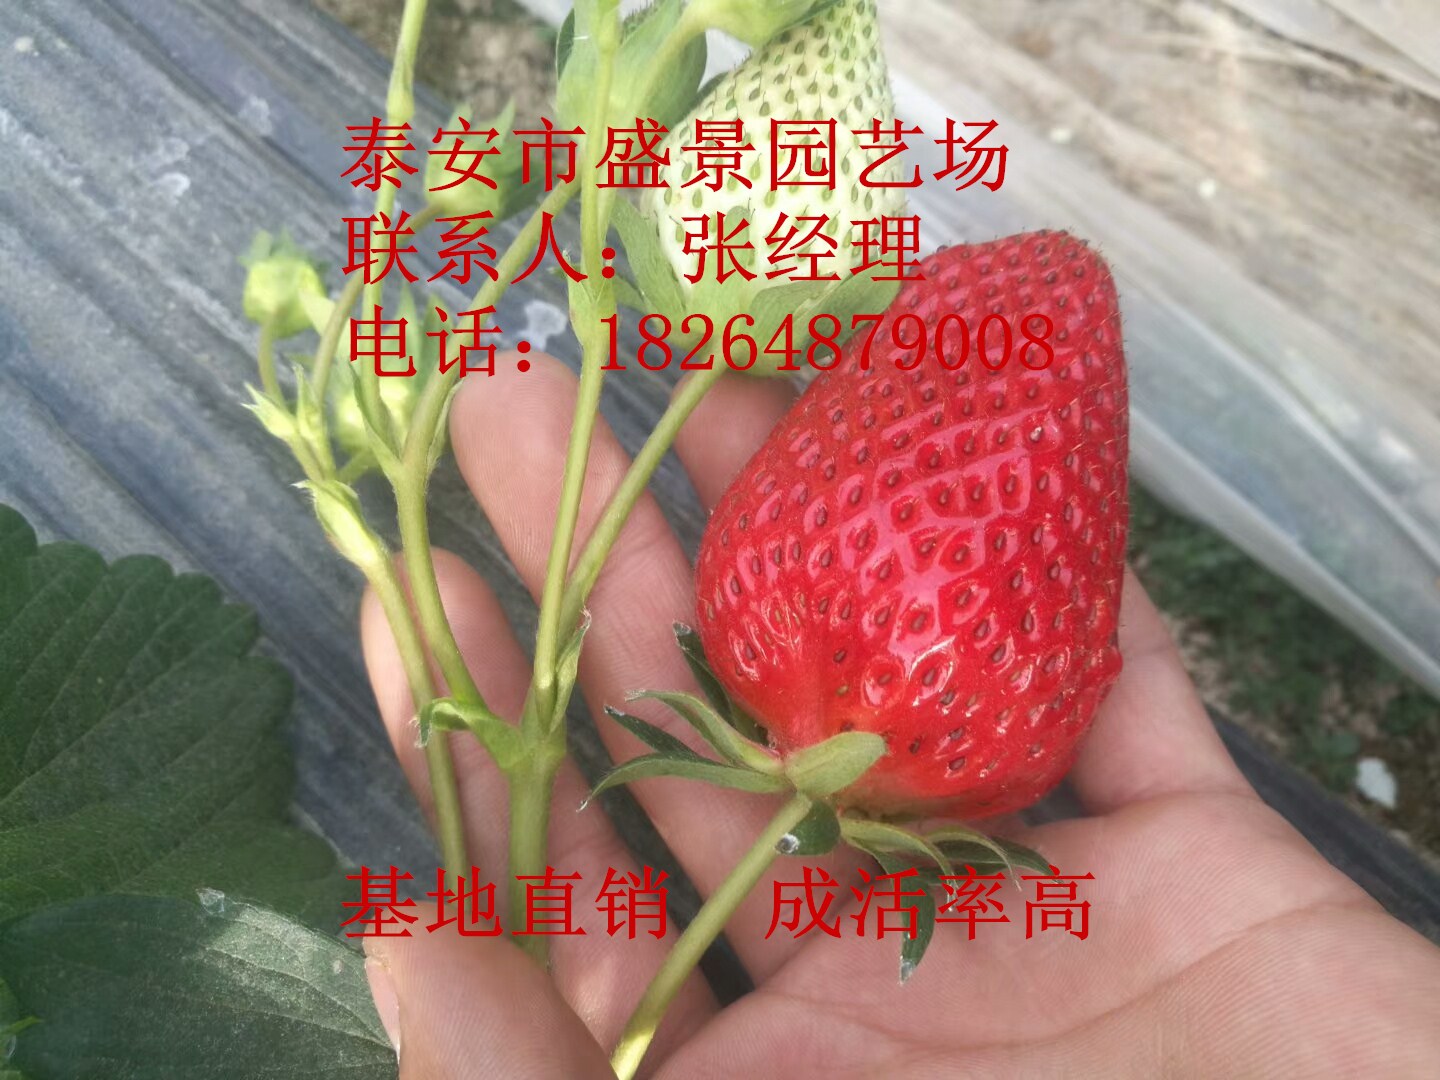 连云港市法兰地草莓苗哪里便宜